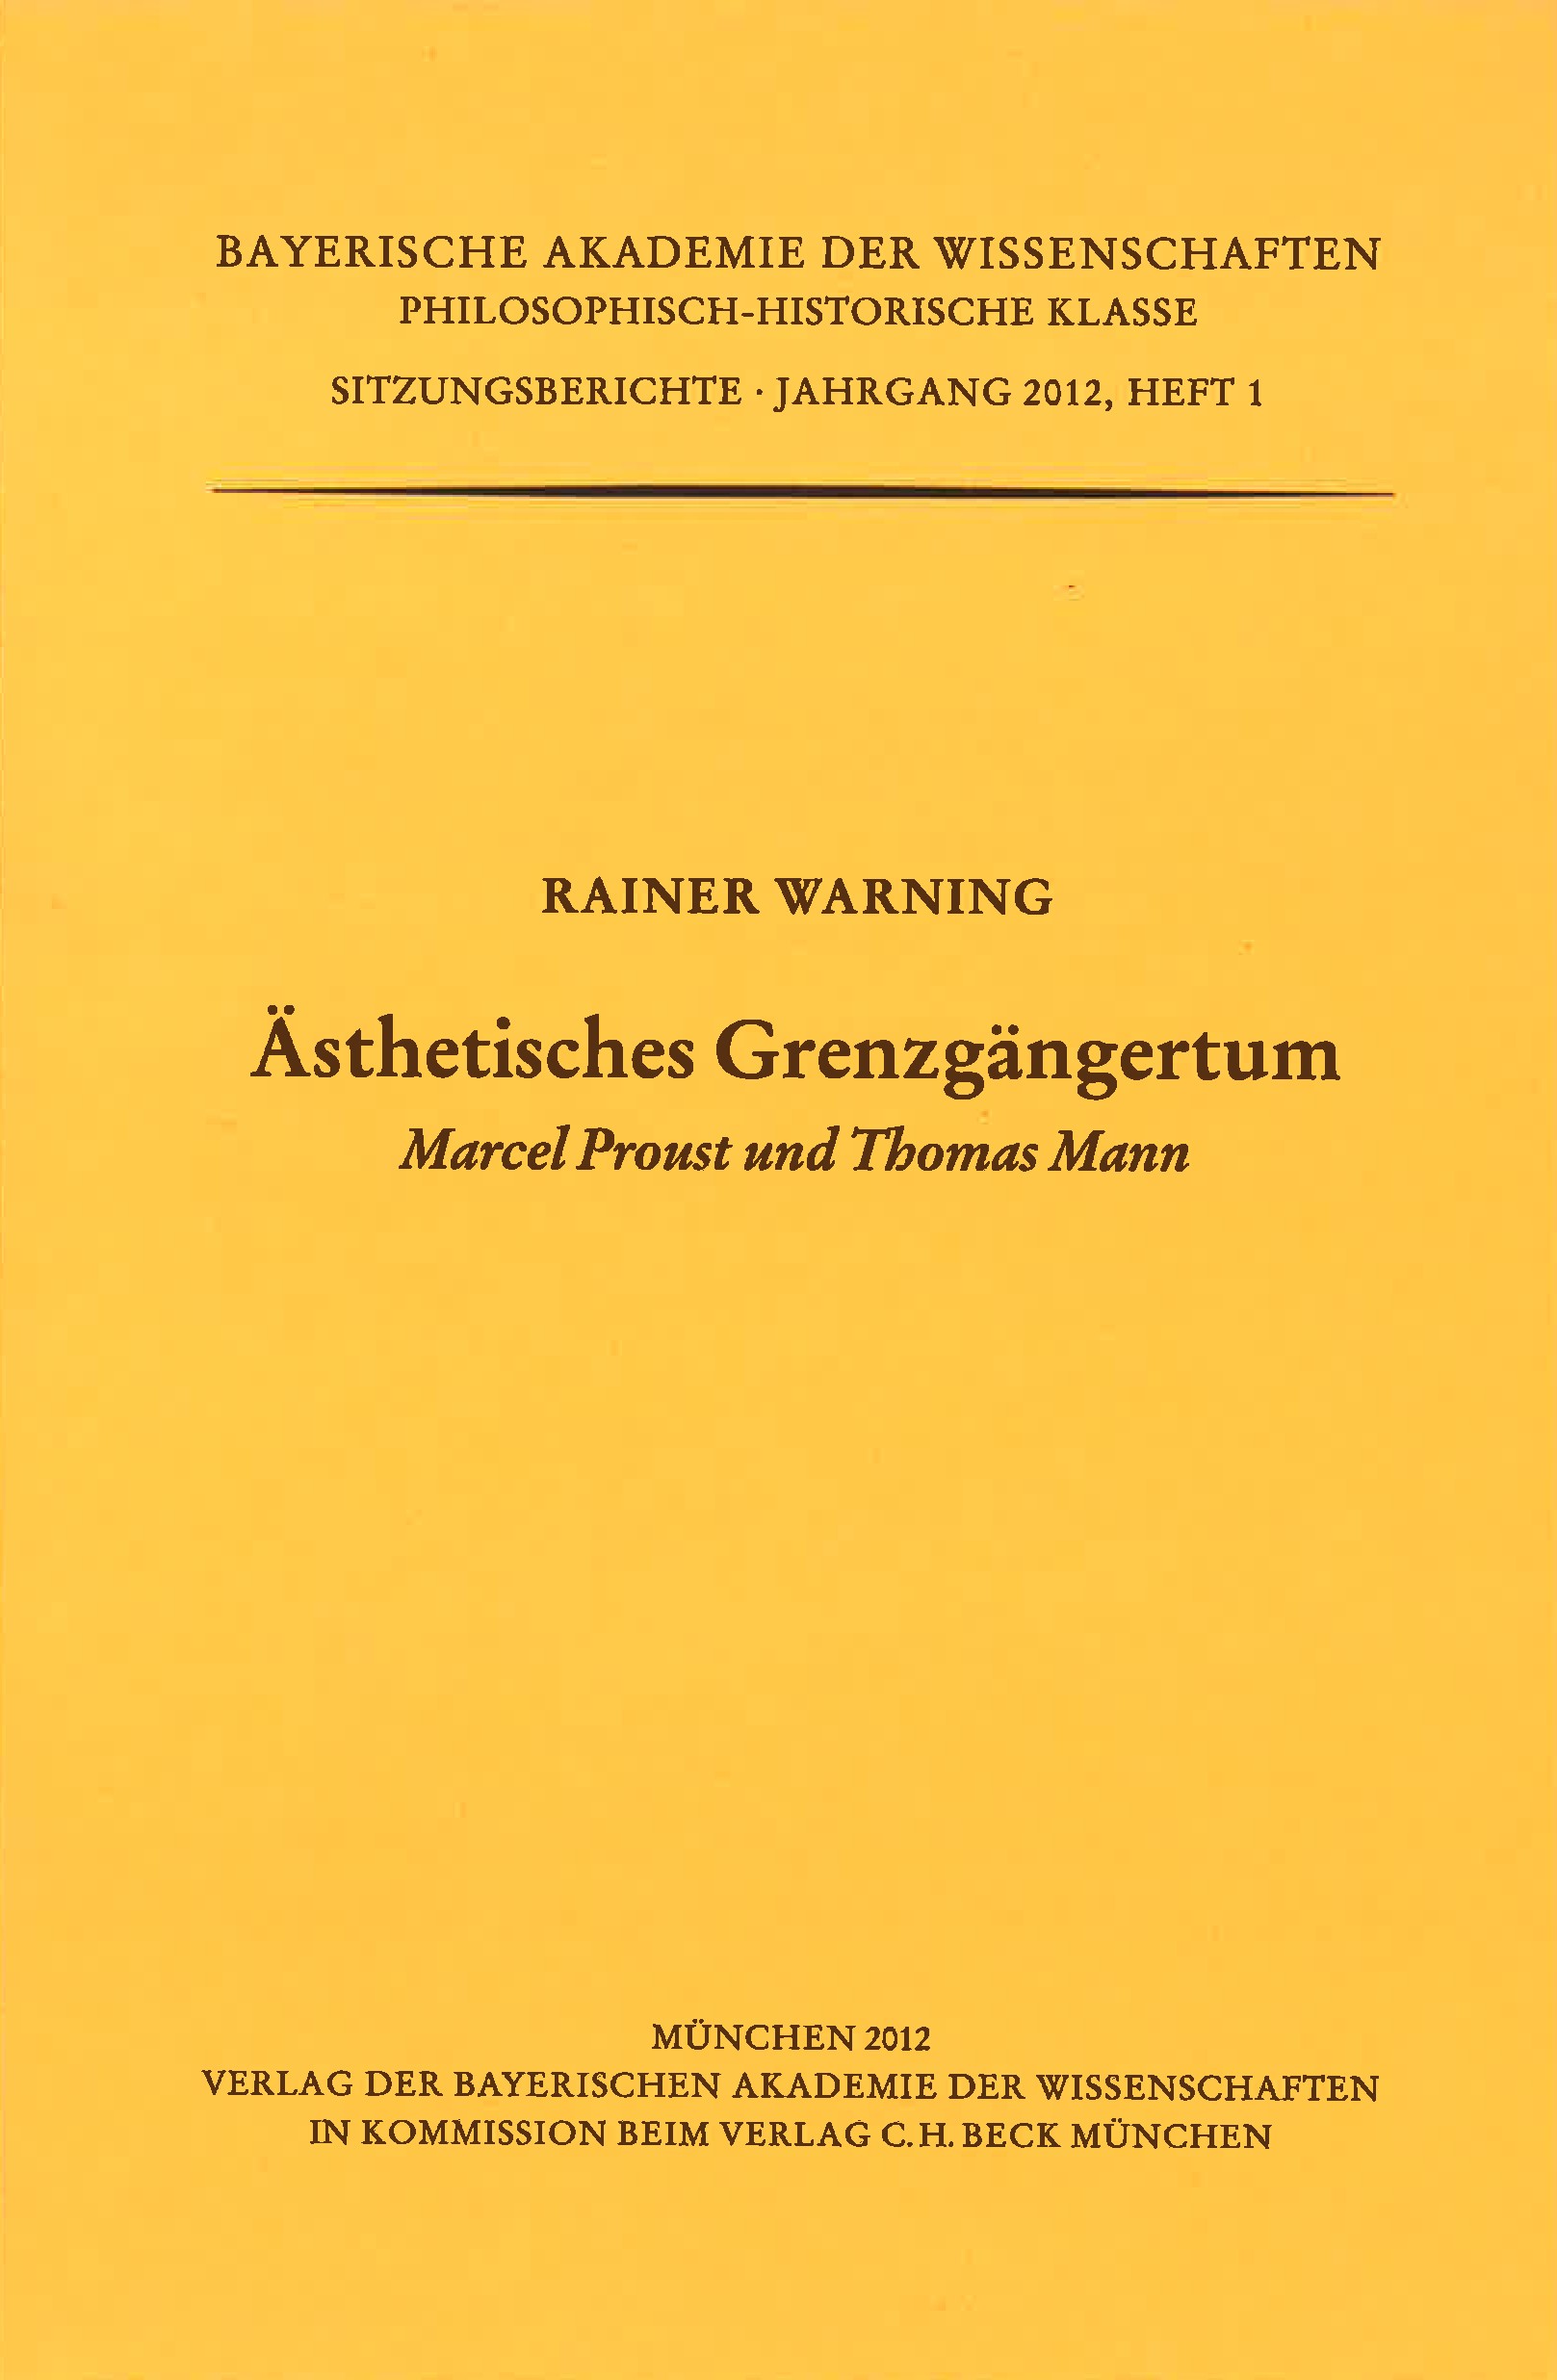 Cover: Warning, Rainer, Ästhetisches Grenzgängertum